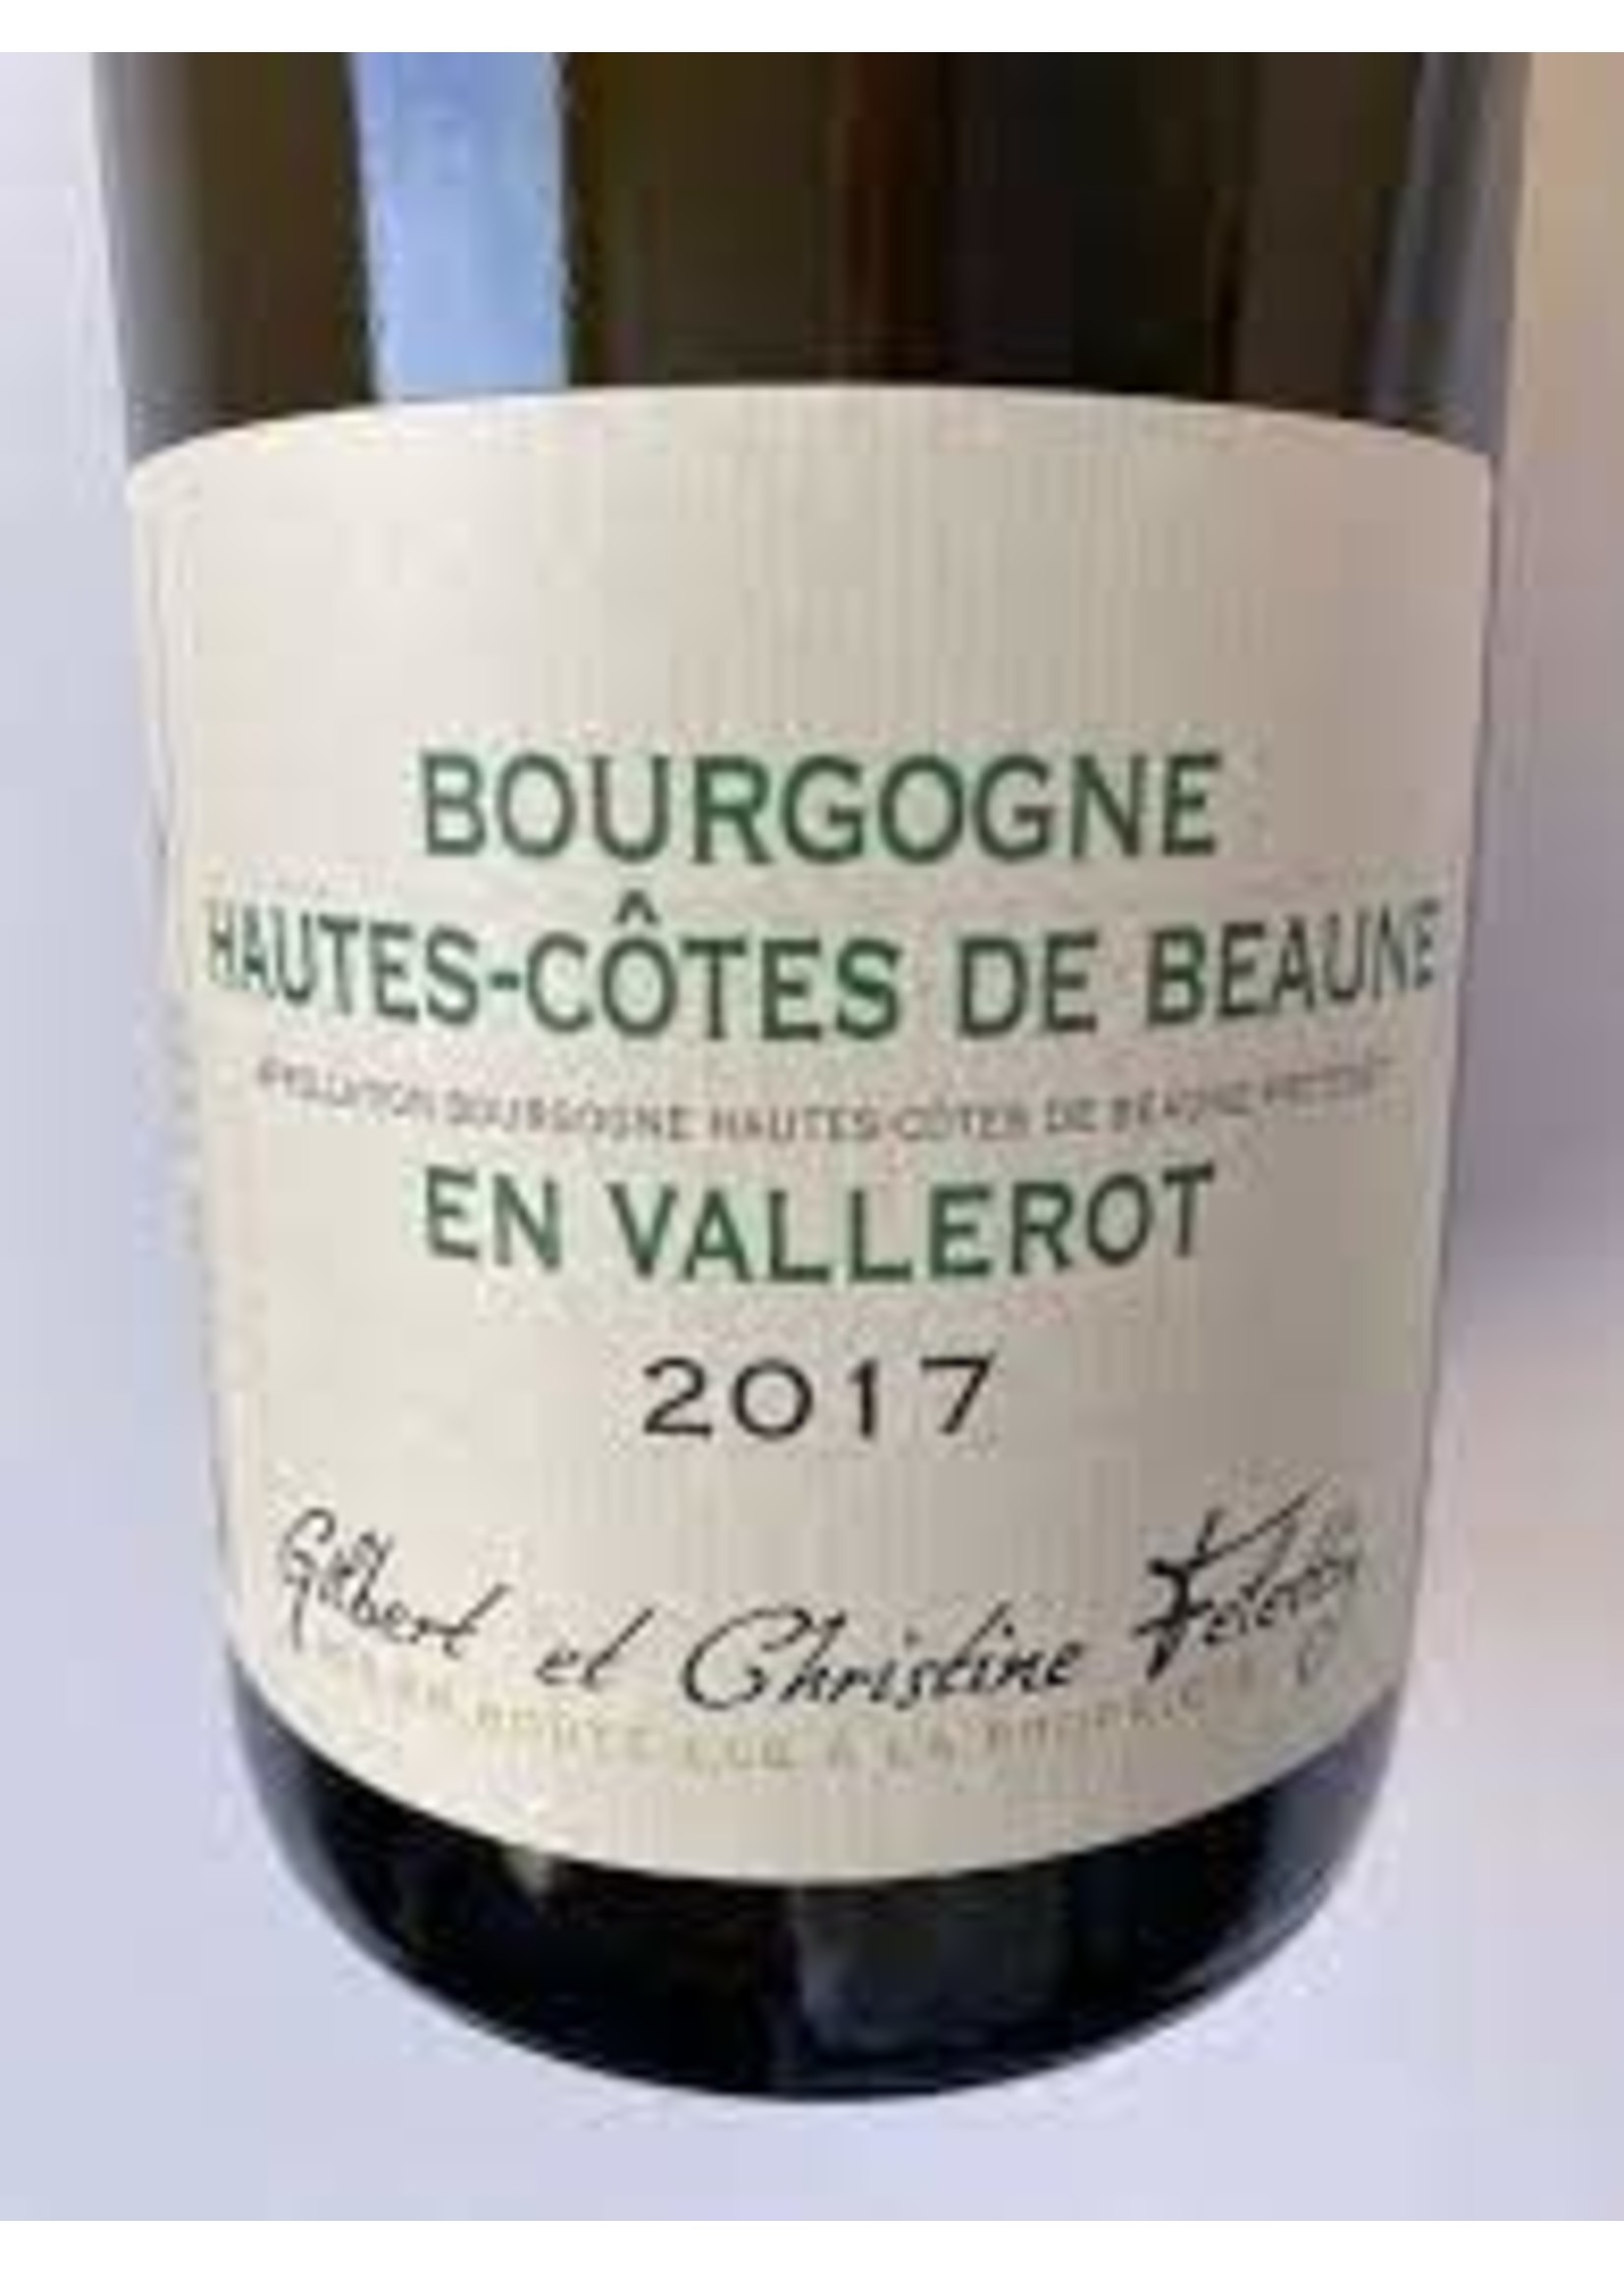 Felettig 2017 Bourgogne Blanc En Vallerot 750ml